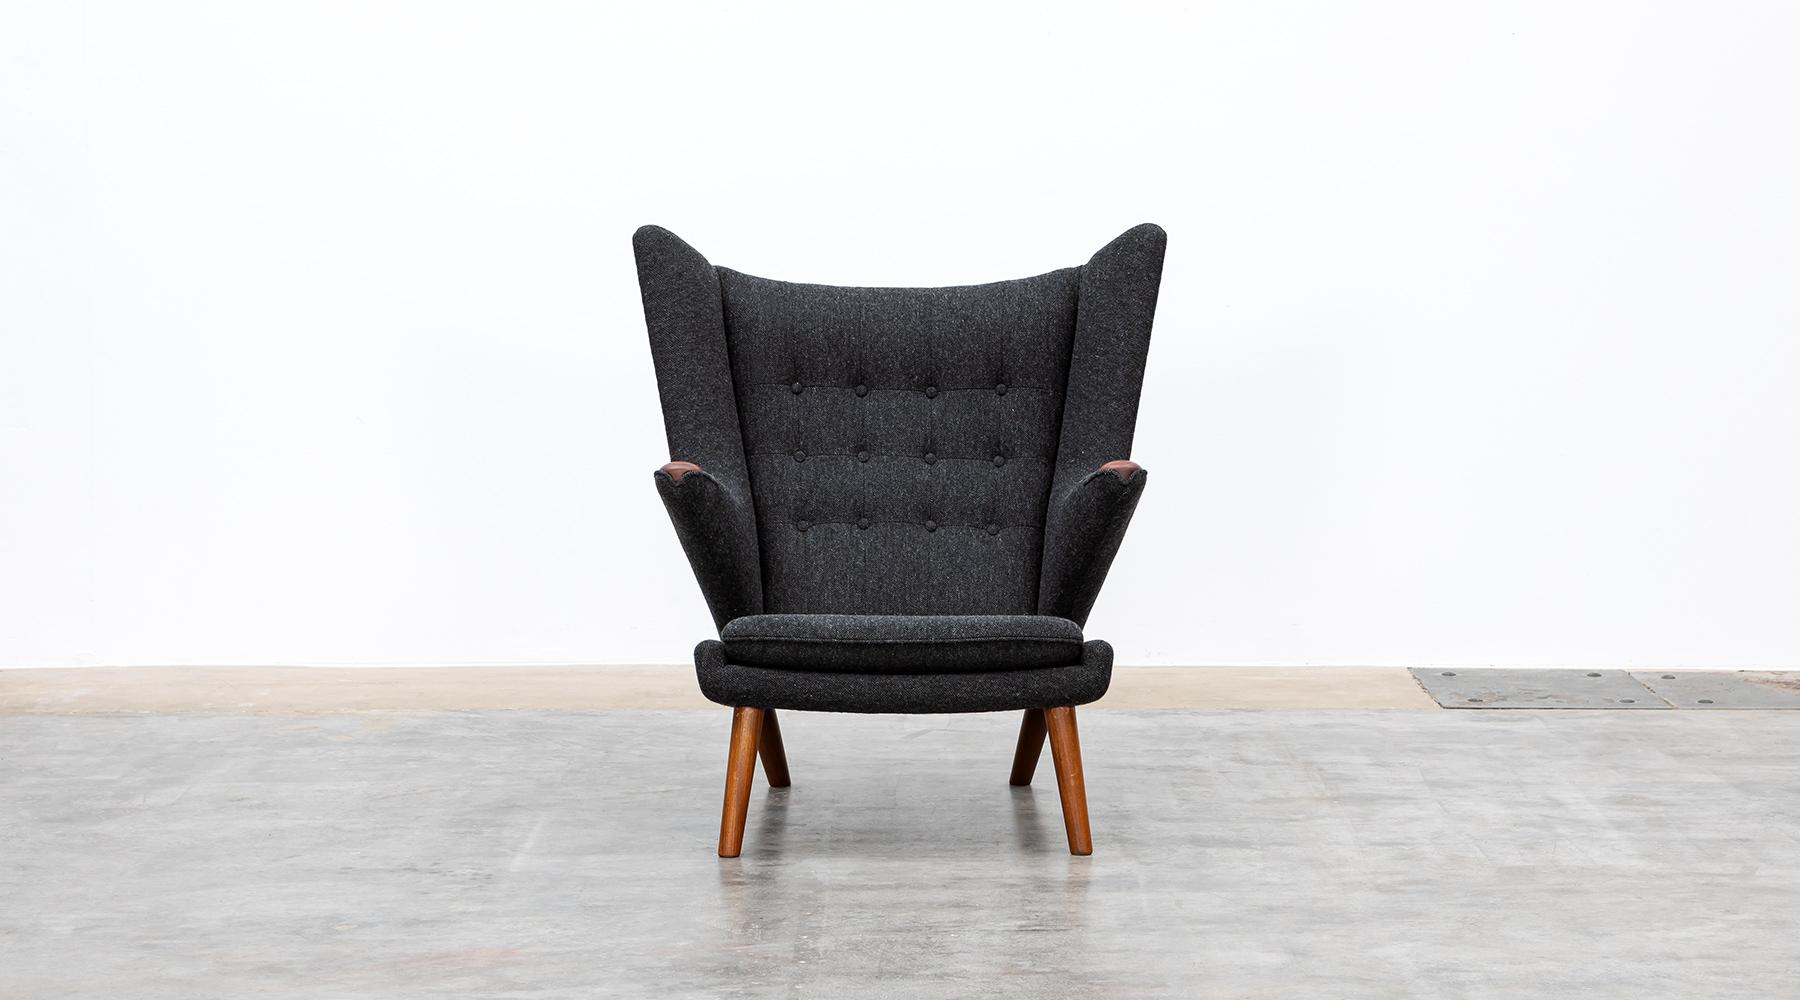 Papa Bär Stuhl von Hans Wegner hergestellt von A.P. Gestohlen, Dänemark, 1951

Wunderschöner original Papa-Bär-Stuhl von Hans Wegner. Dieses geniale Stück ist in perfektem Zustand und wurde vor kurzem neu mit einem hochwertigen Wollstoff in warmem